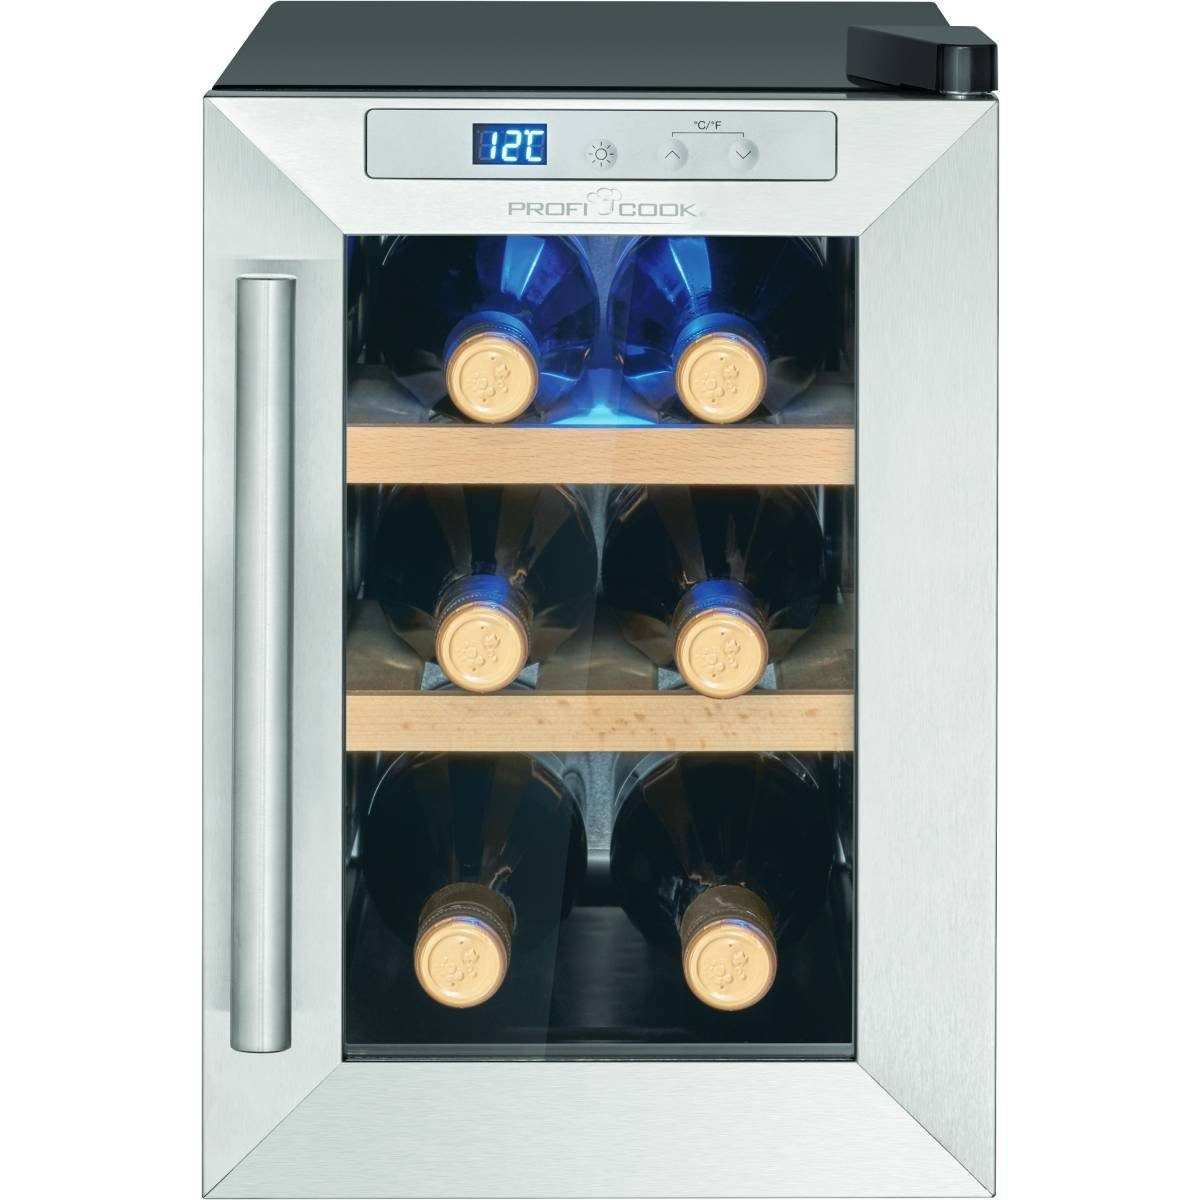 ProfiCook Getränkekühlschrank PC-WK 1231, 39.5 cm hoch, 24.6 cm breit, Weinkühlschrank für 6 Flaschen schwarz